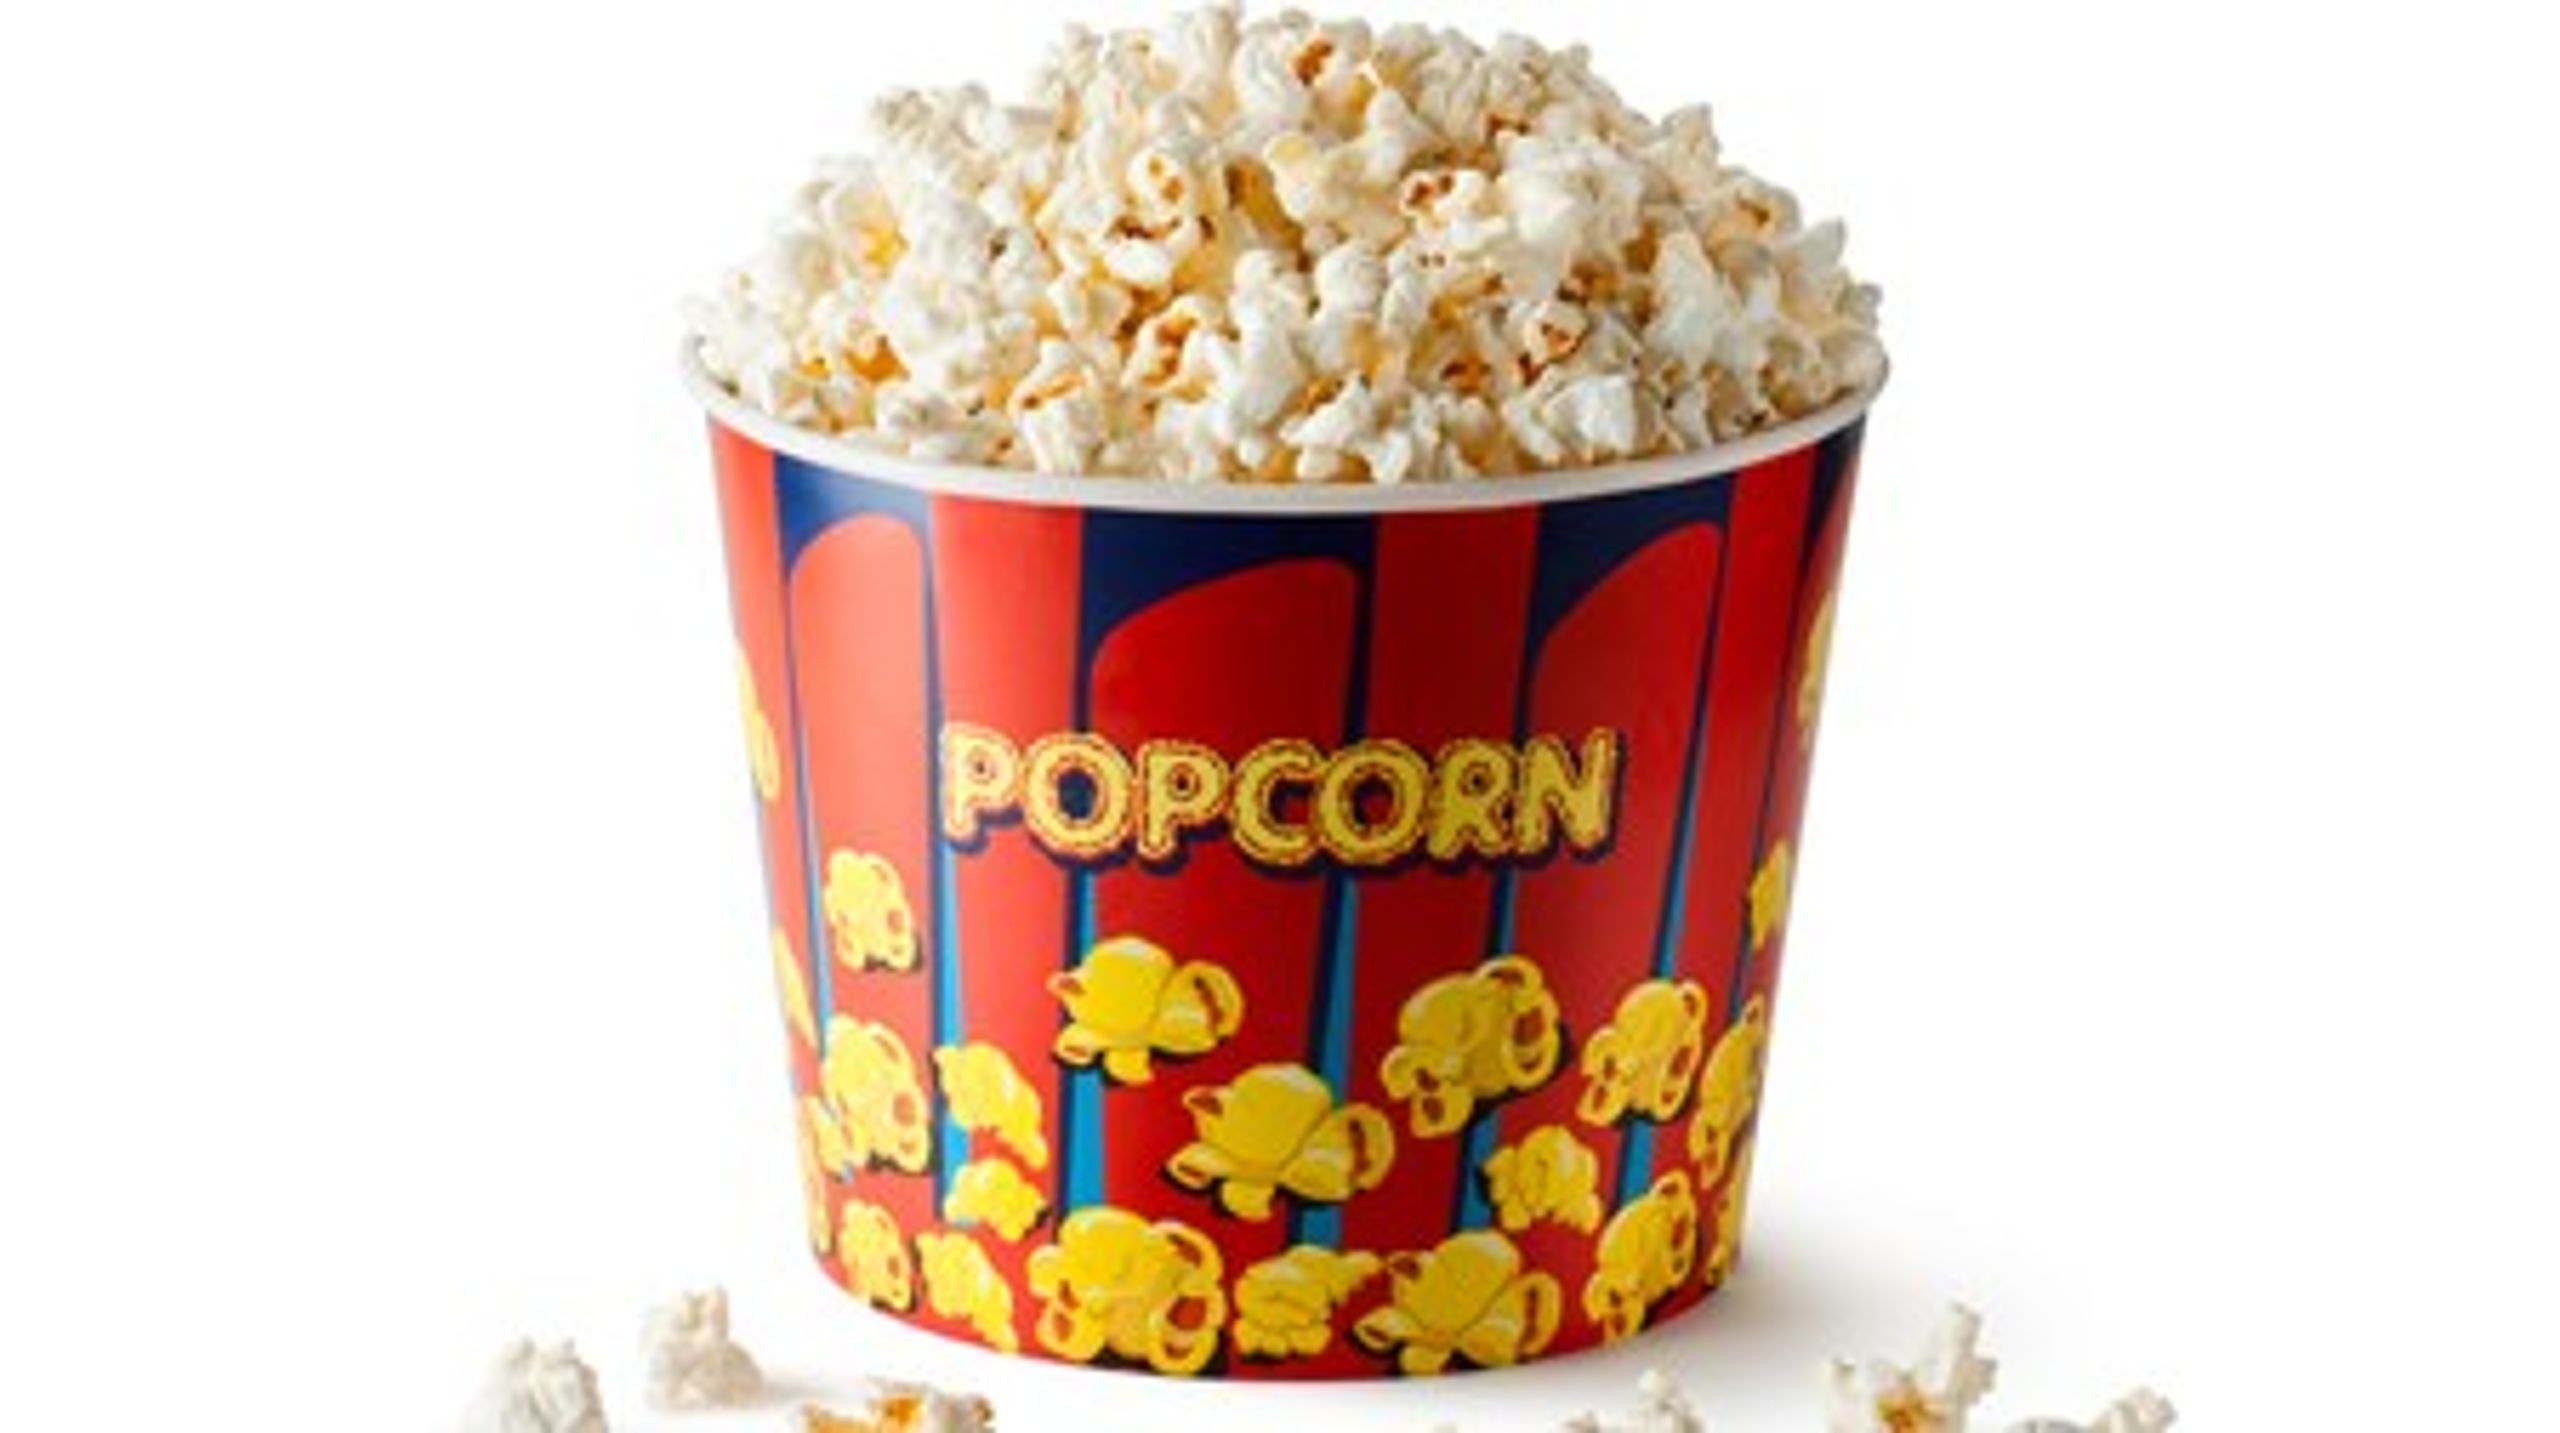 Popcorn er blandt de fødevarer, hvor forskerne i størst grad har kunnet påvise afsmitning af fluorstoffer&nbsp;fra emballagen.&nbsp;